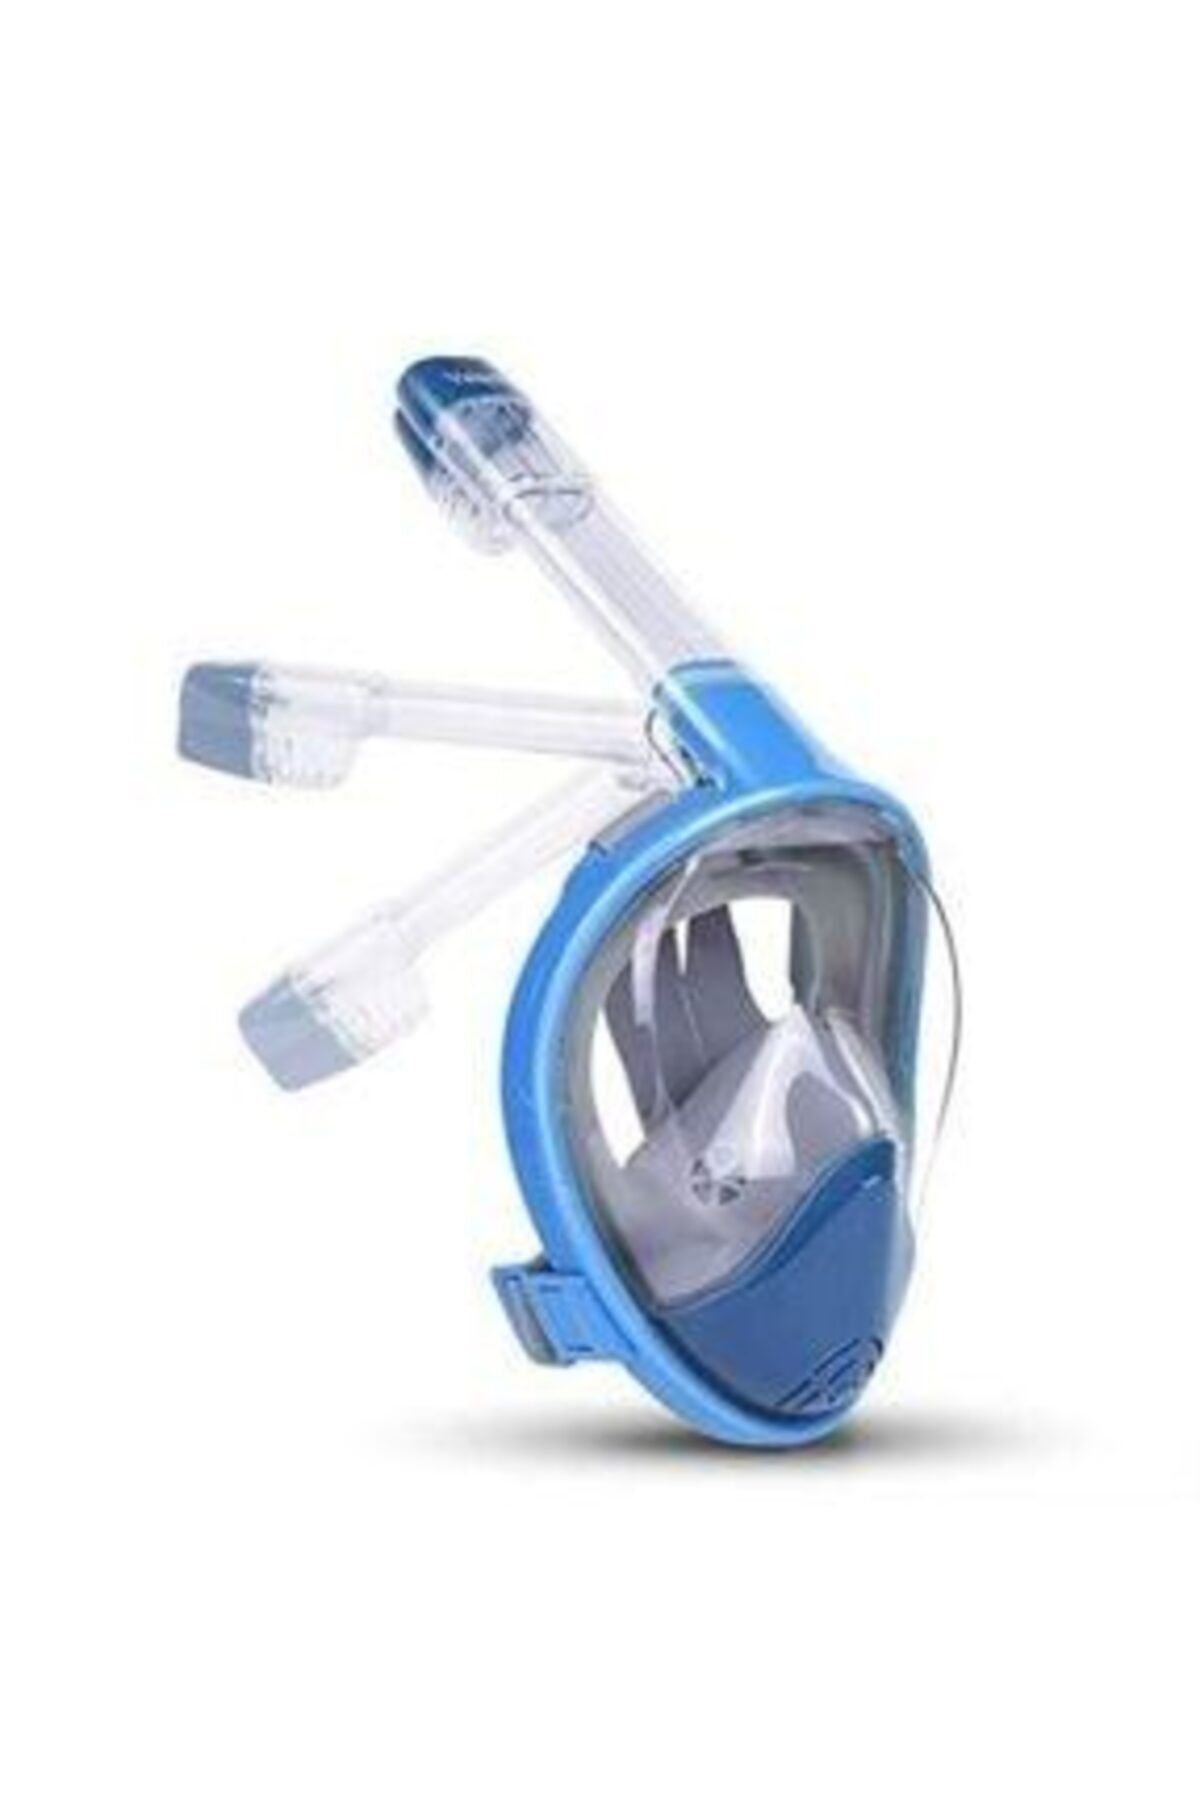 BERMUDA Fullface Tam Yüz 180 Derece Dalış Maskesi Şnorkel Dalış Maskesi S/m Su Altı Keşifler Için